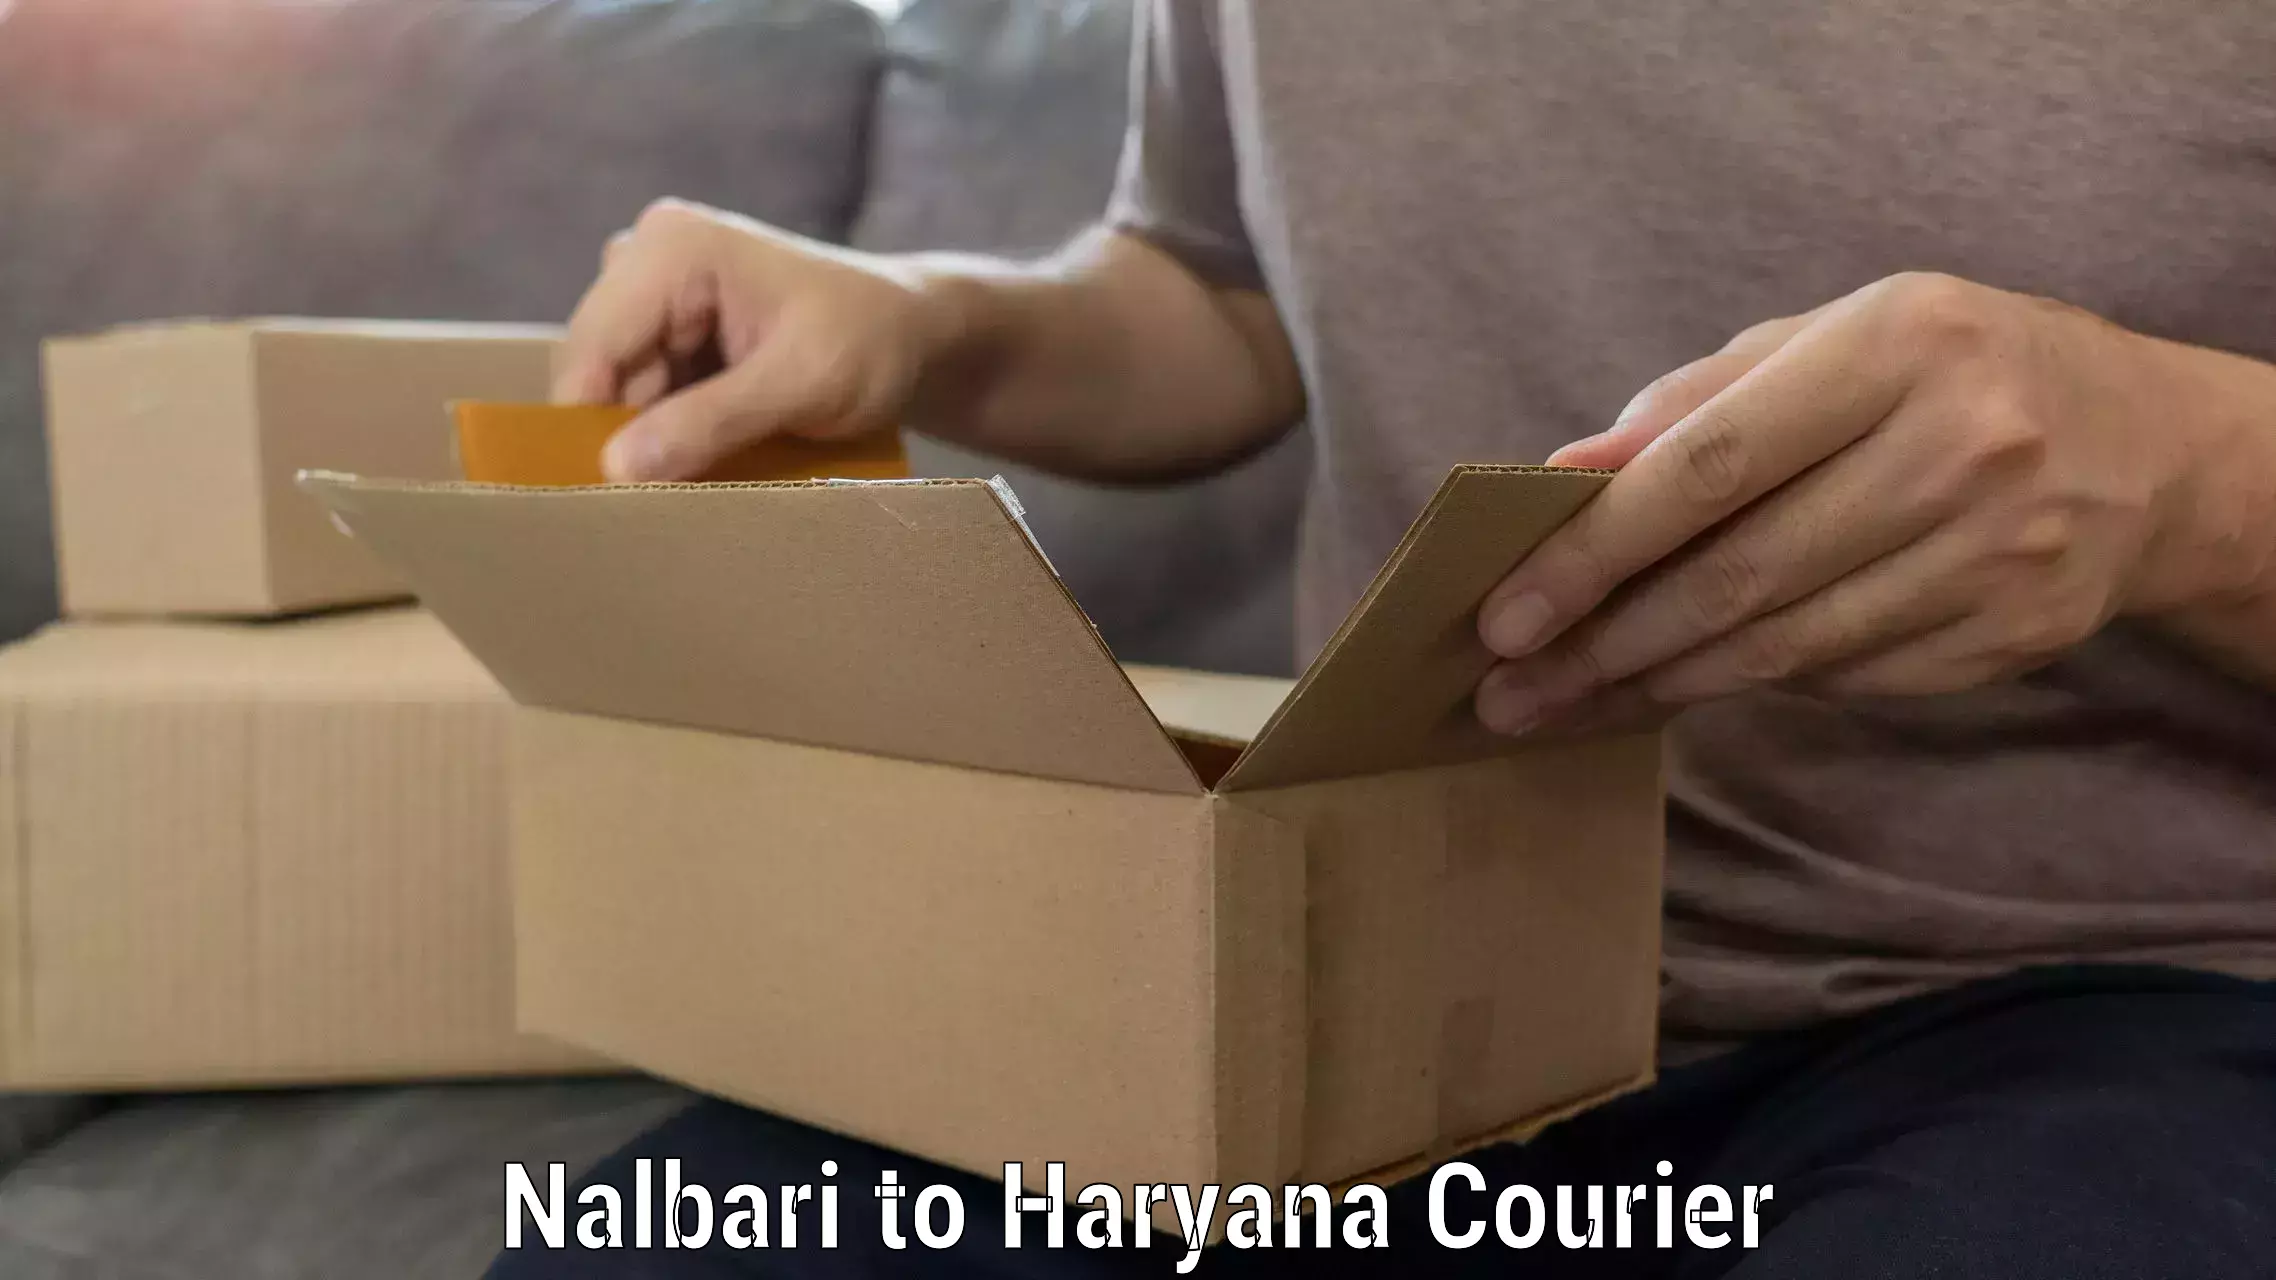 Household moving experts Nalbari to Kurukshetra University